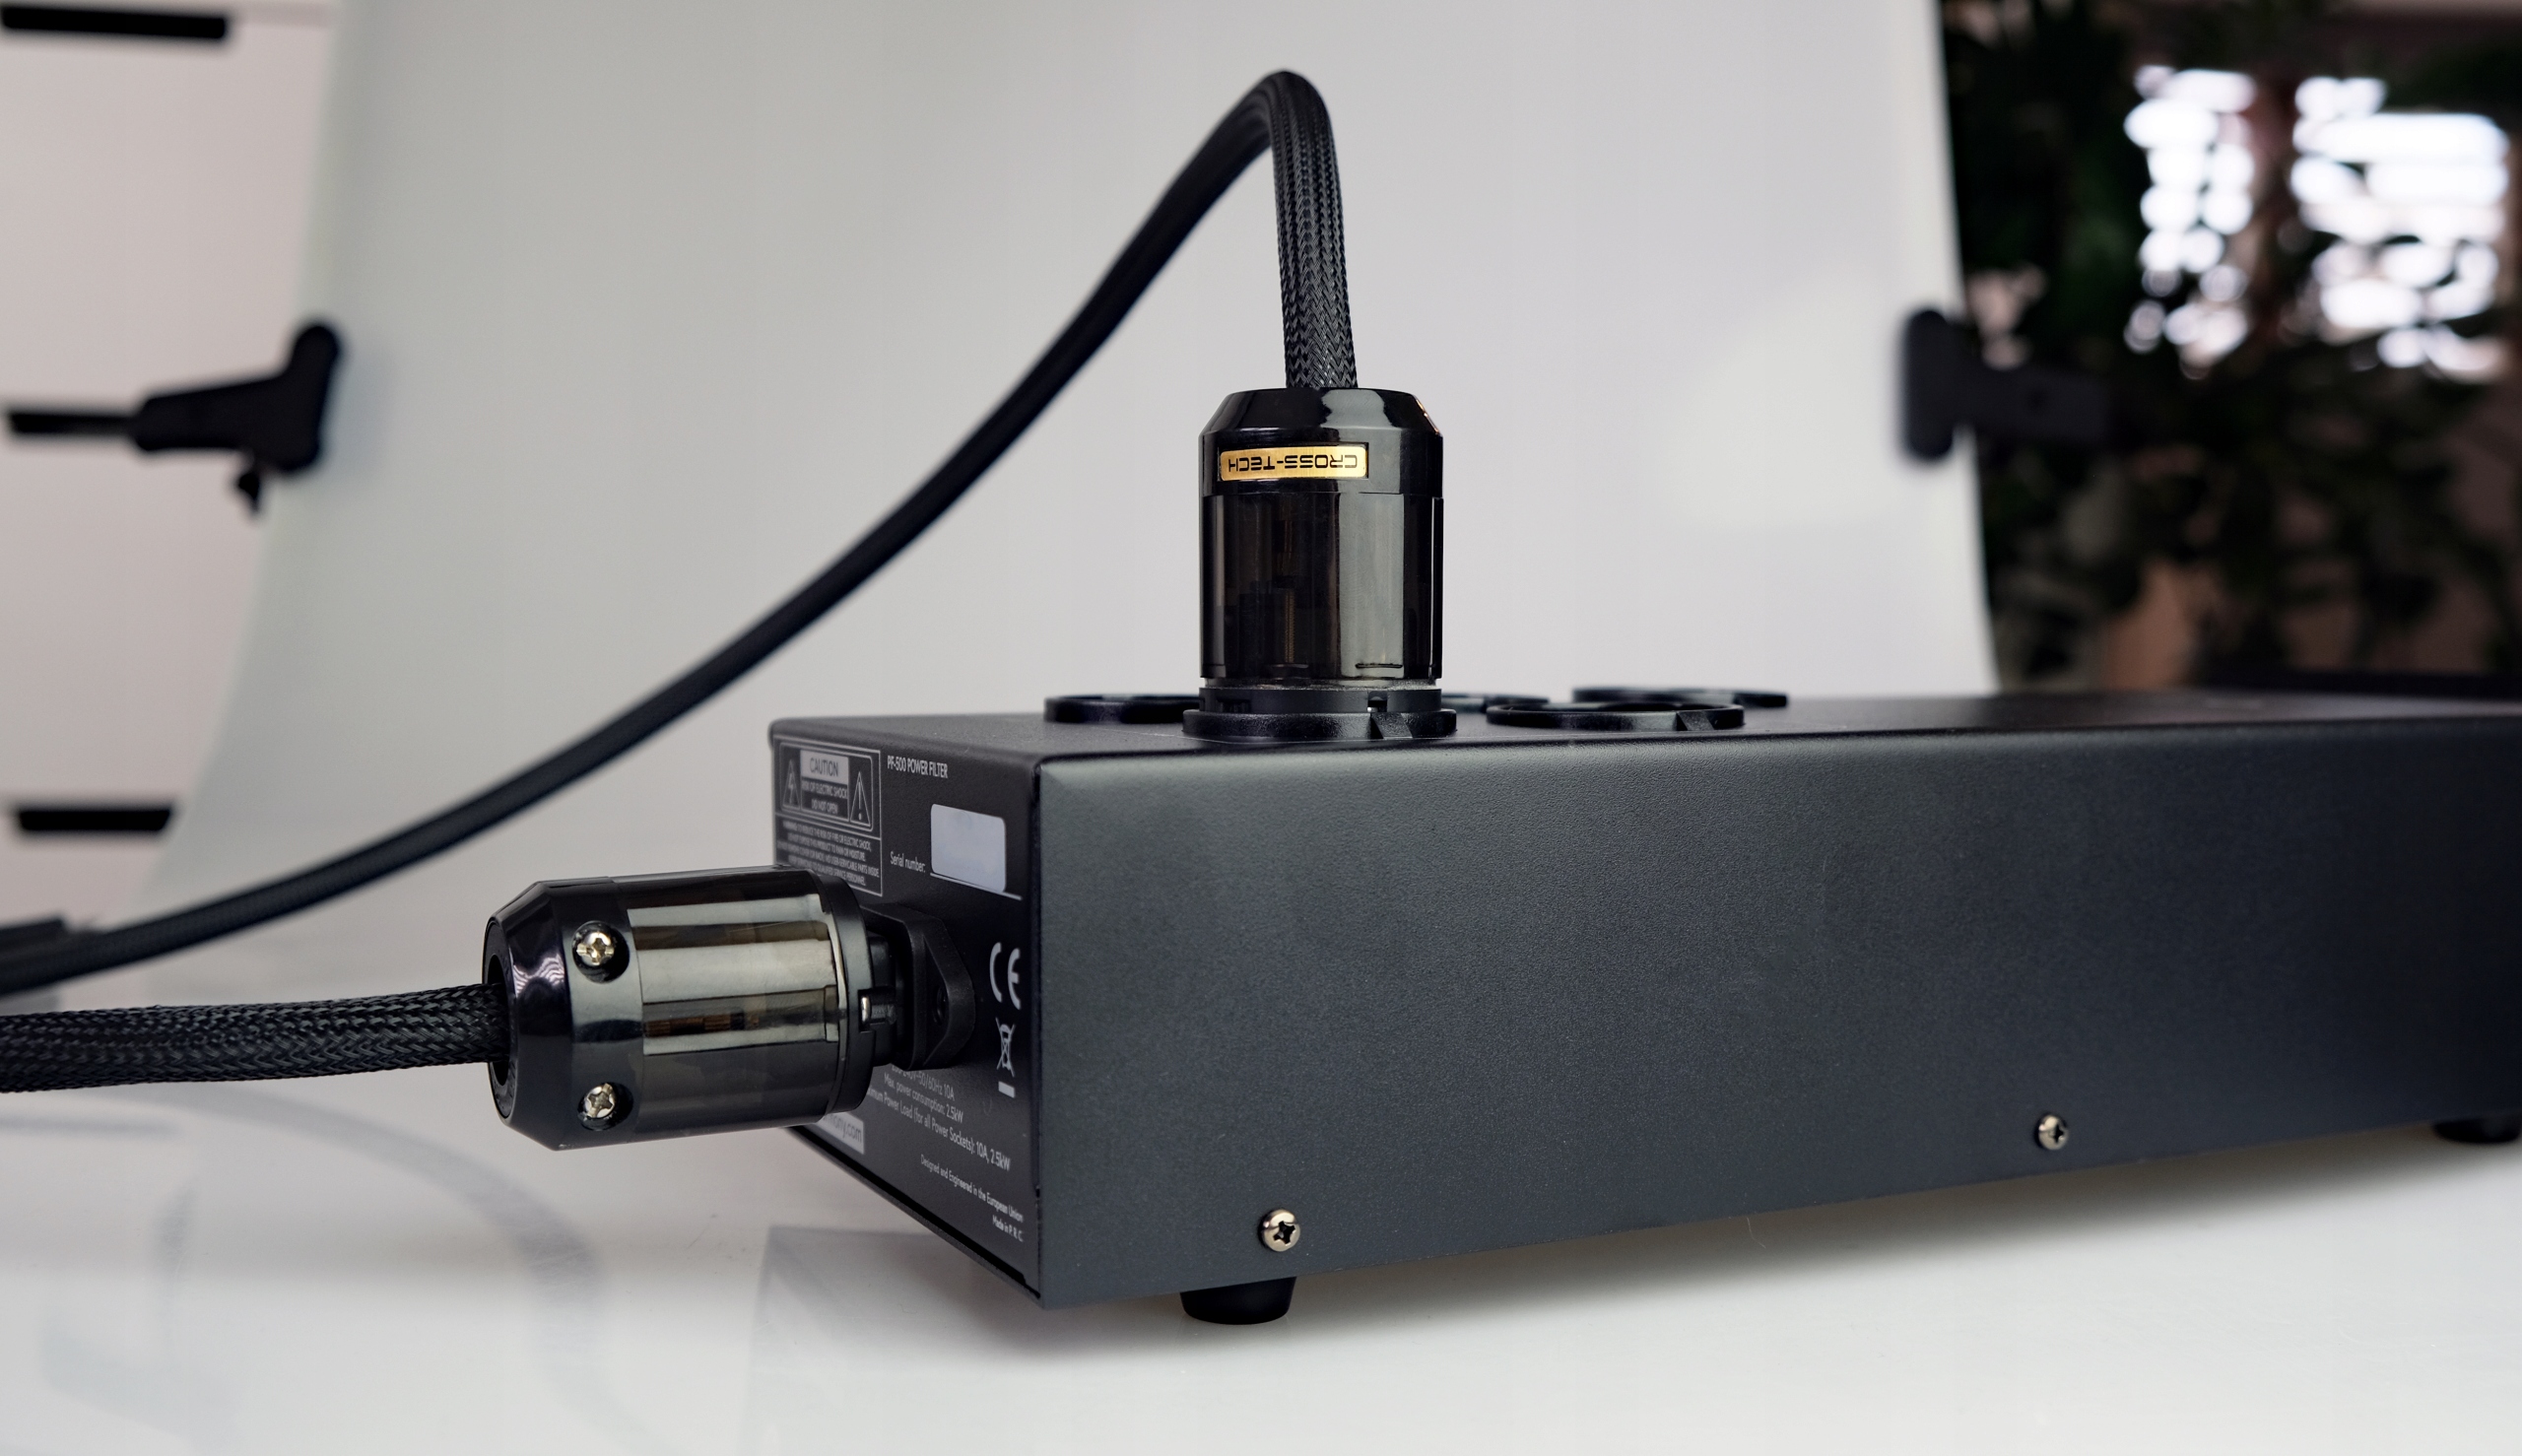 Kabel przewód zasilający CROSS-TECH oplot - 1m Waga produktu z opakowaniem jednostkowym 1 kg